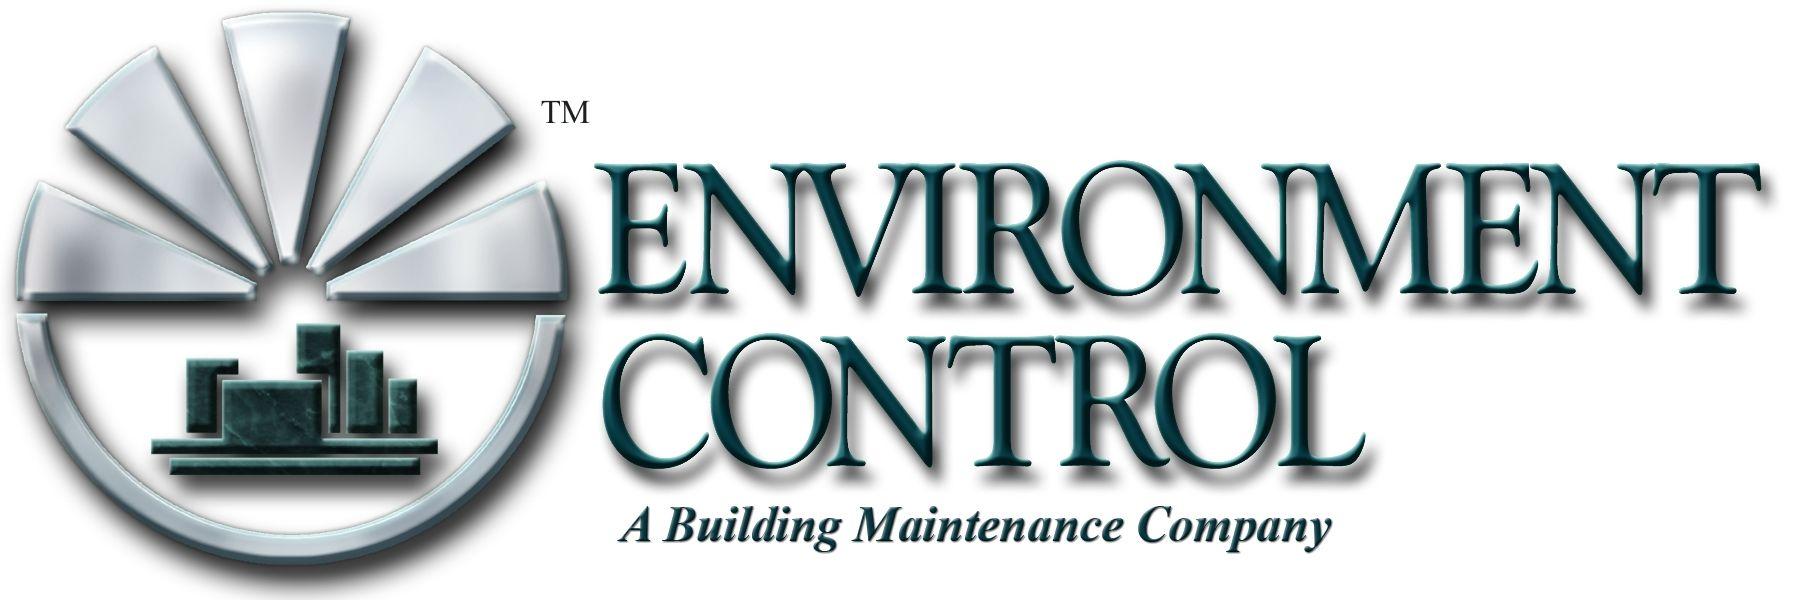 Environmental Control Logo - Environmental Control – Ohio Means Jobs Highland County